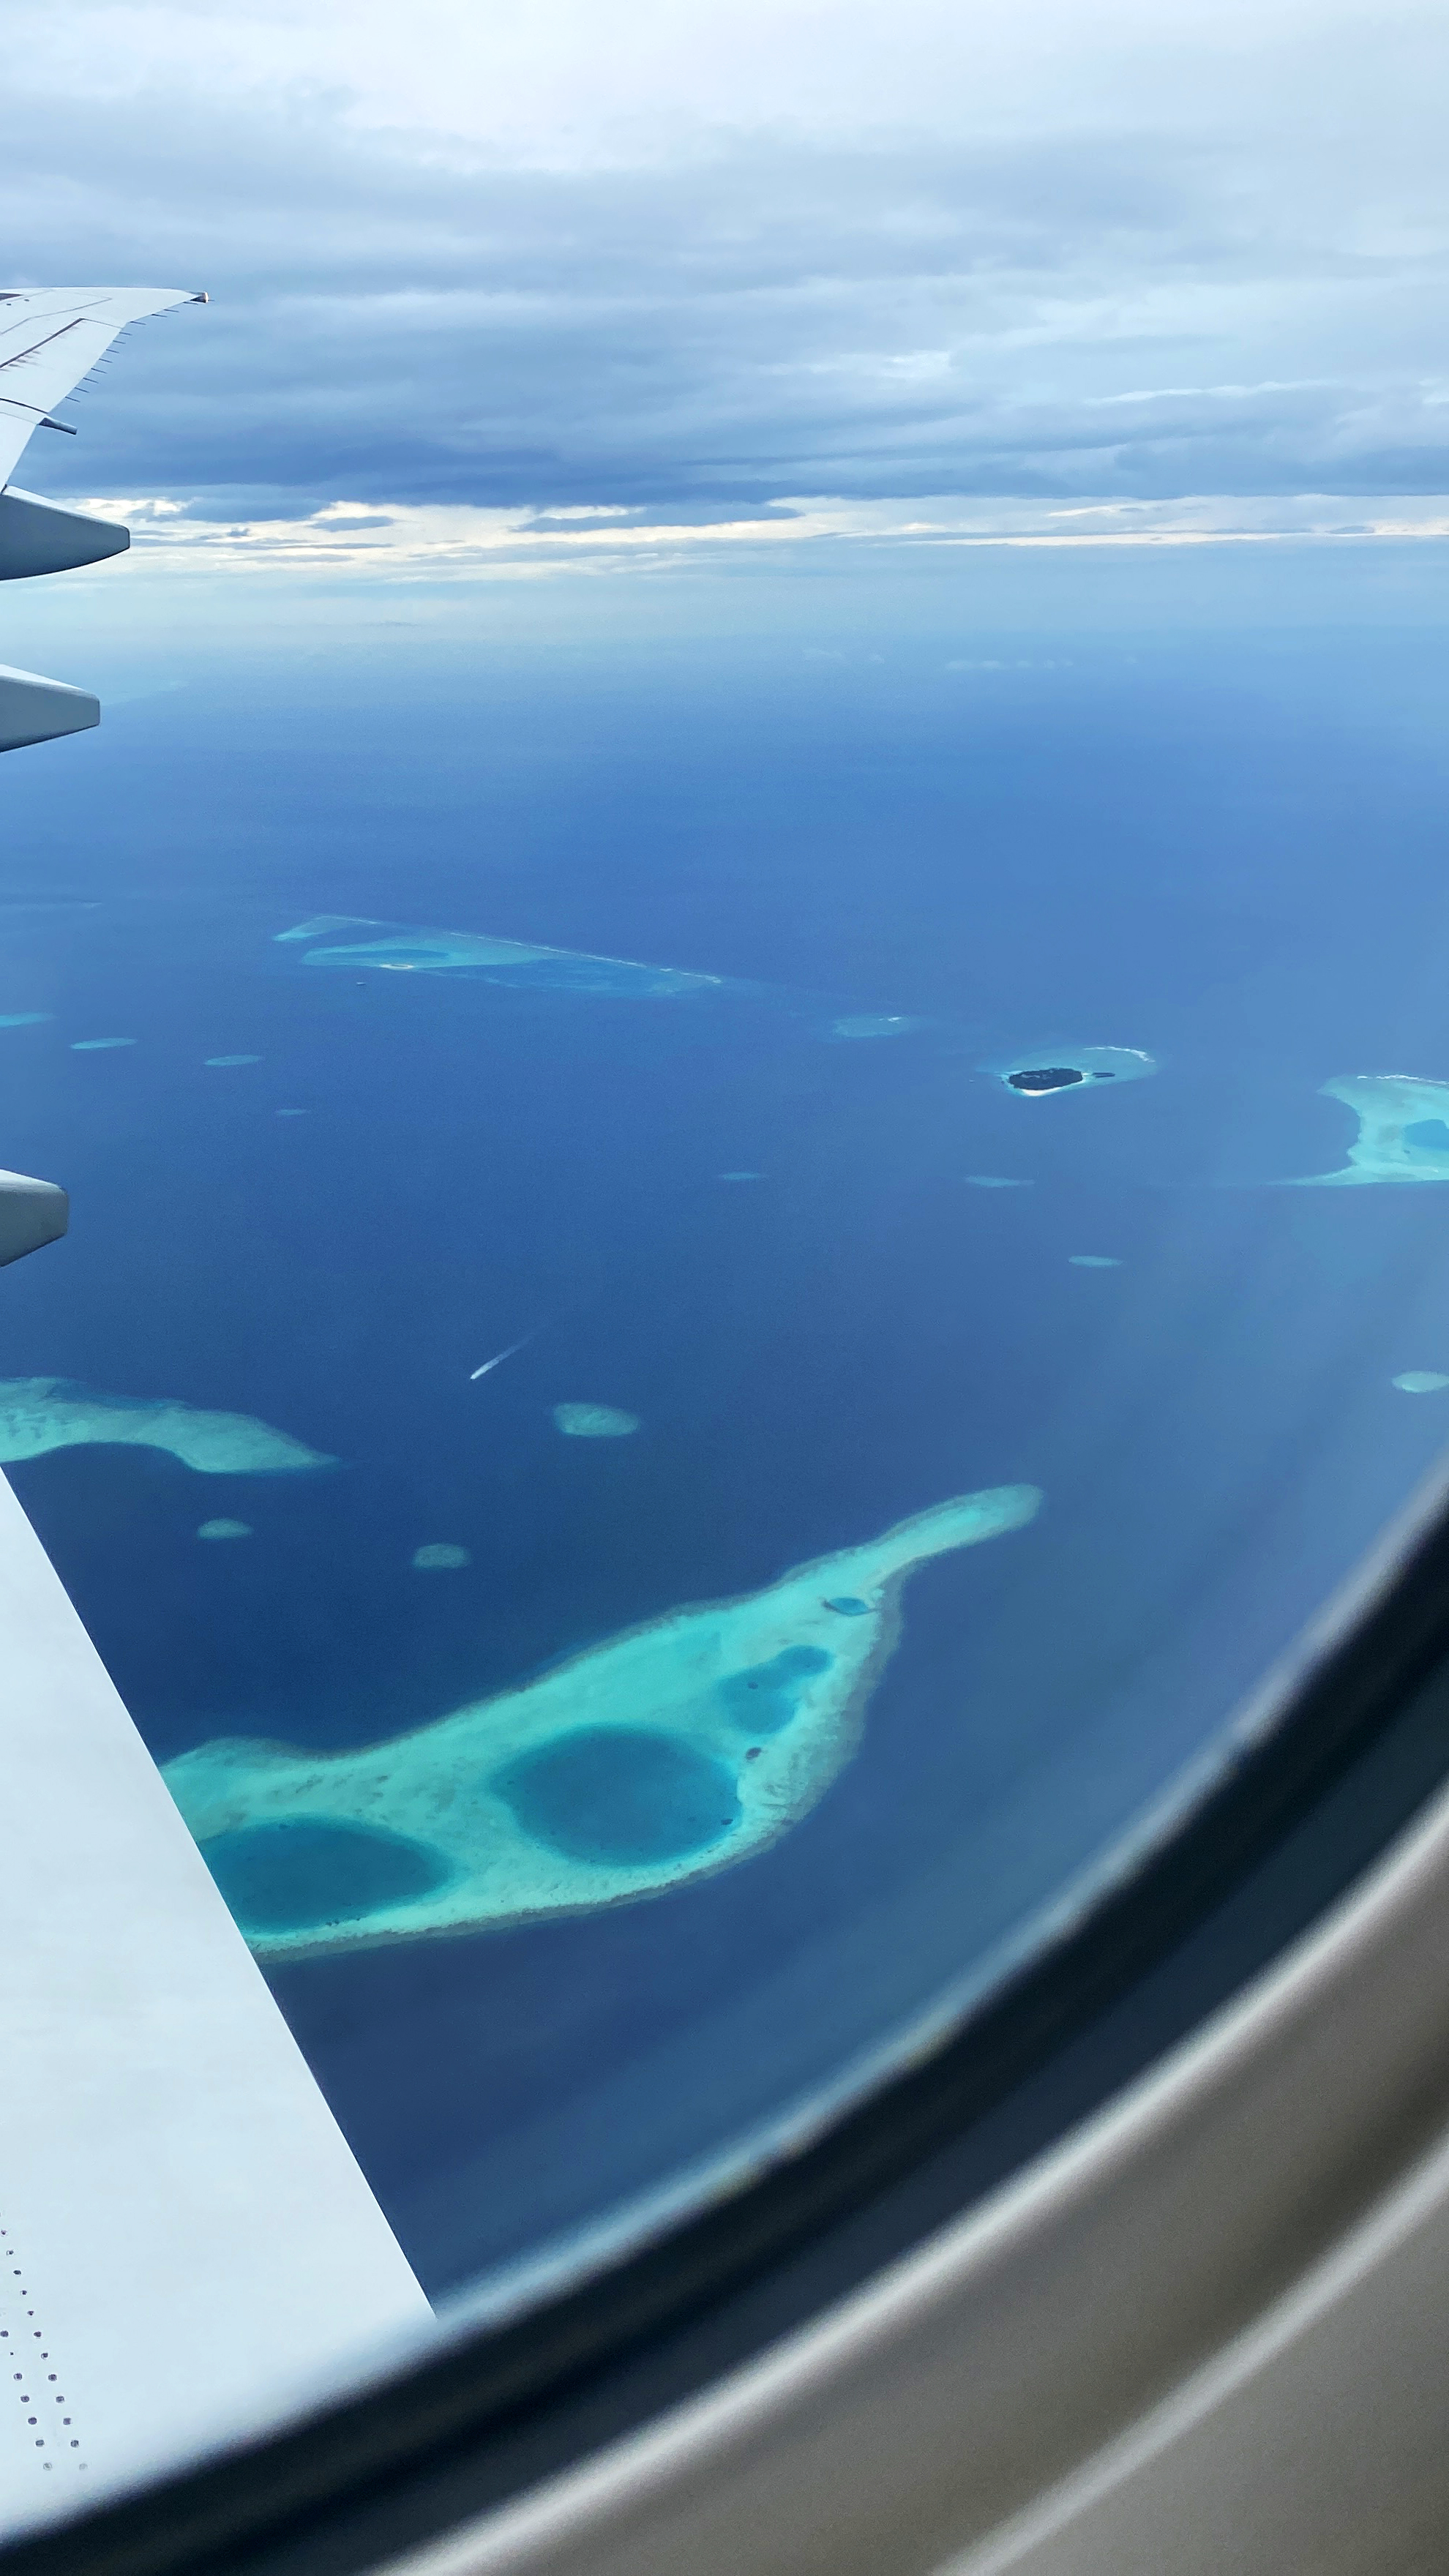 하늘 위에서 보이는 몰디브의 모습-1